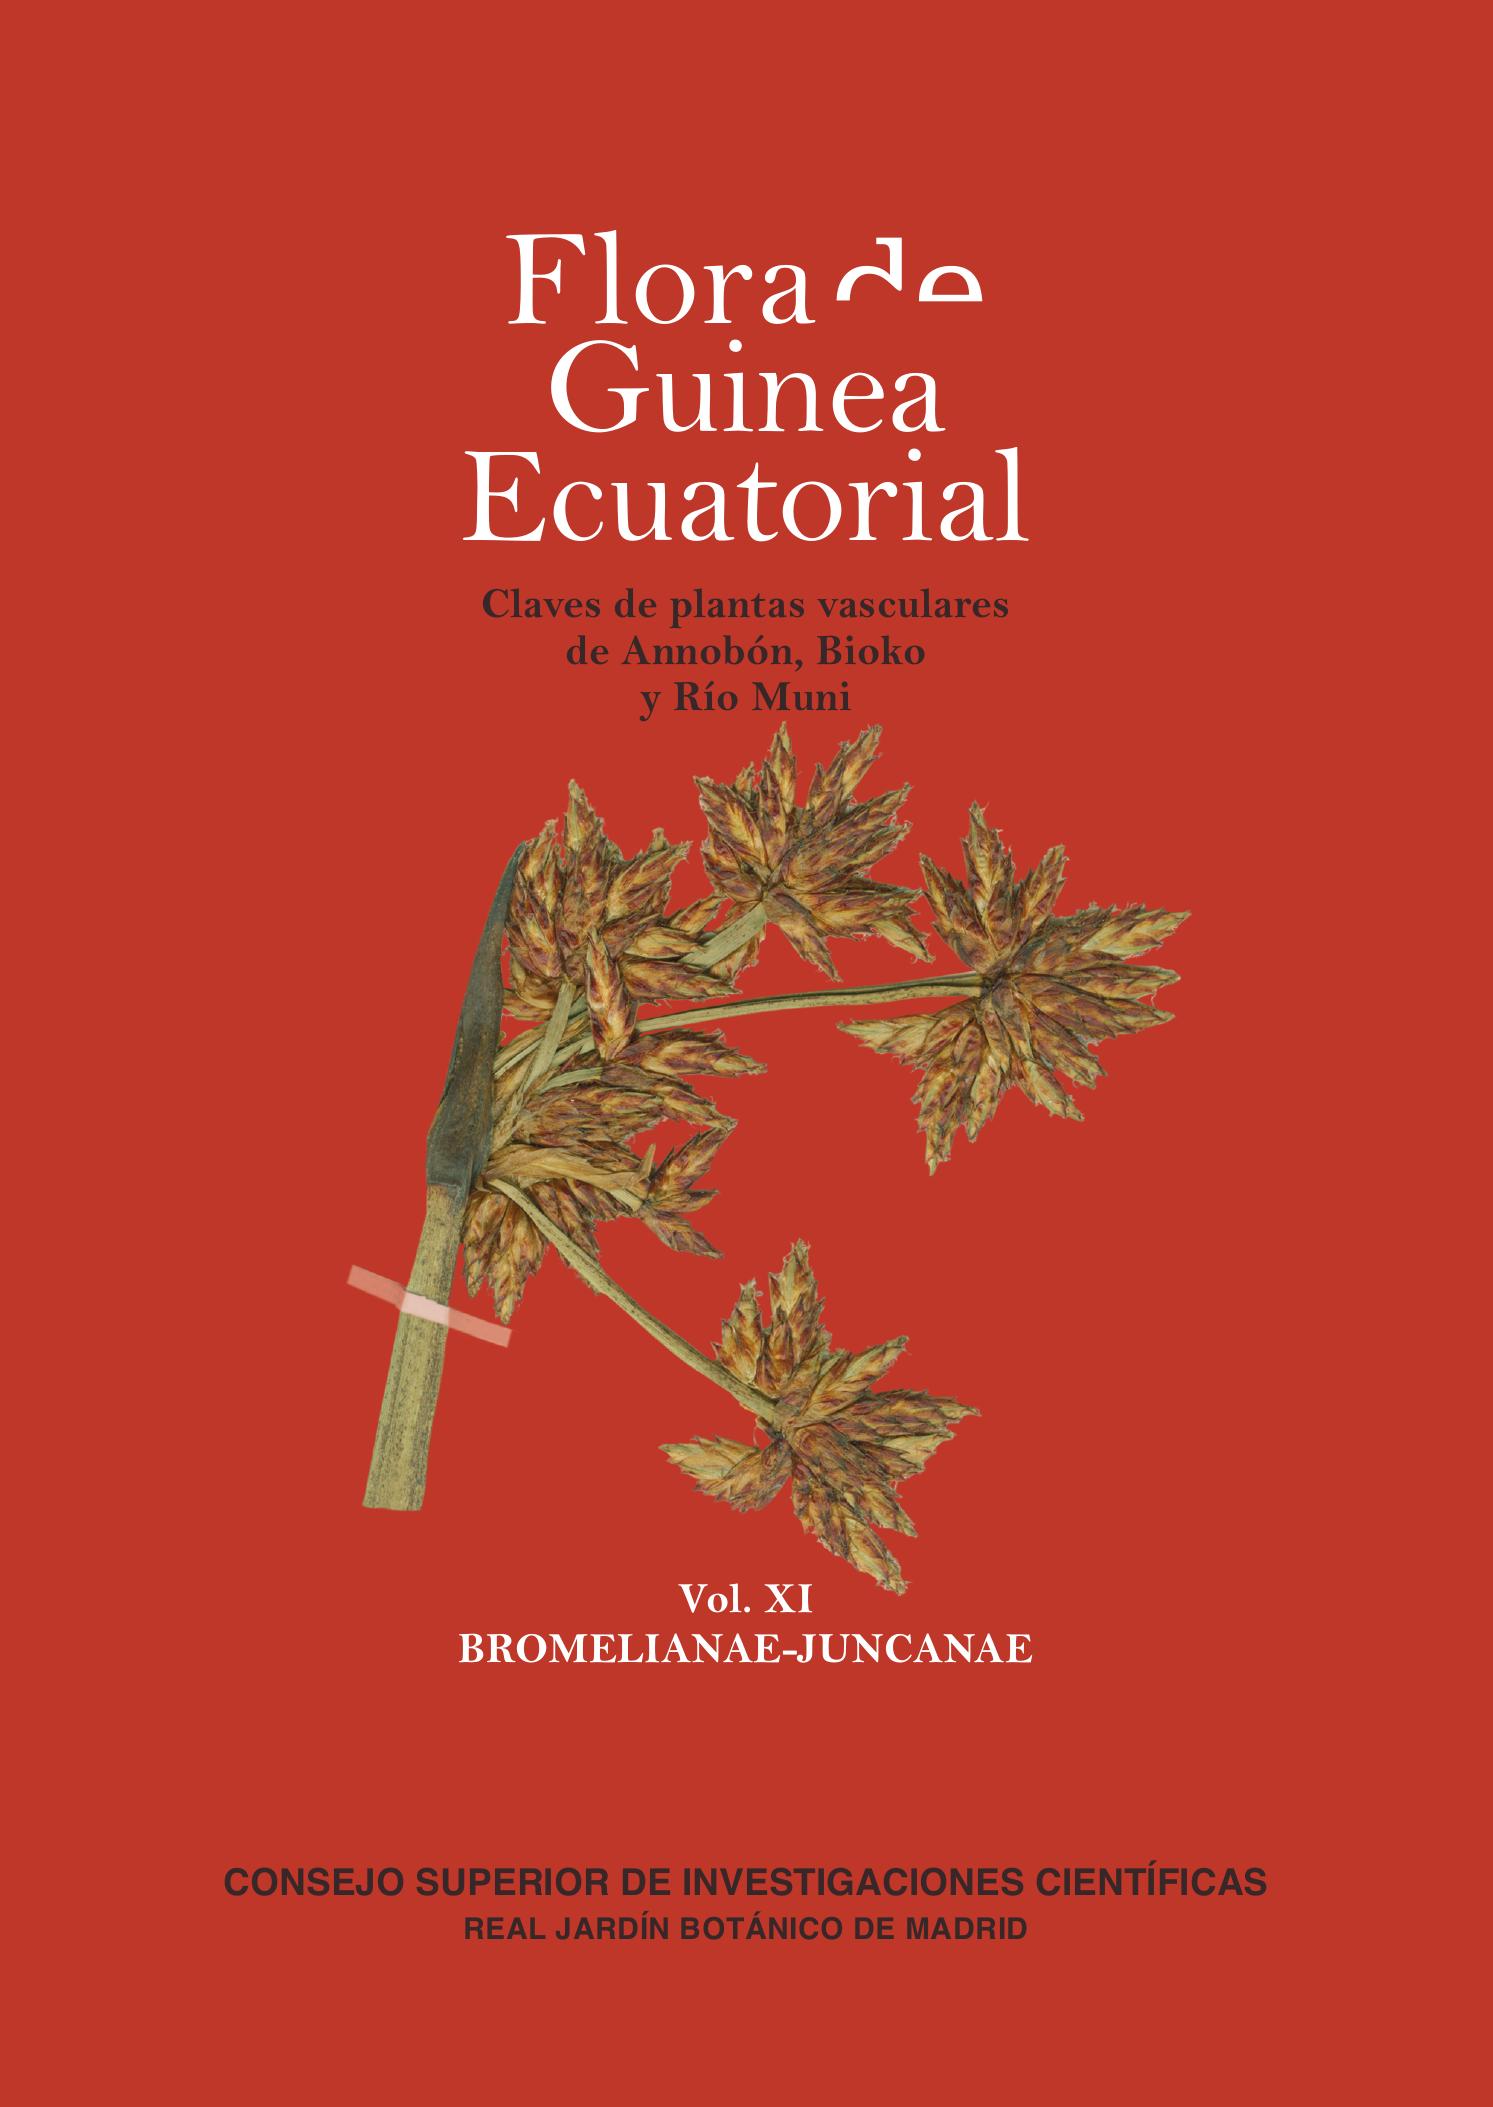 Publicado el primero de los 3 volúmenes de monocotiledóneas de Guinea Ecuatorial